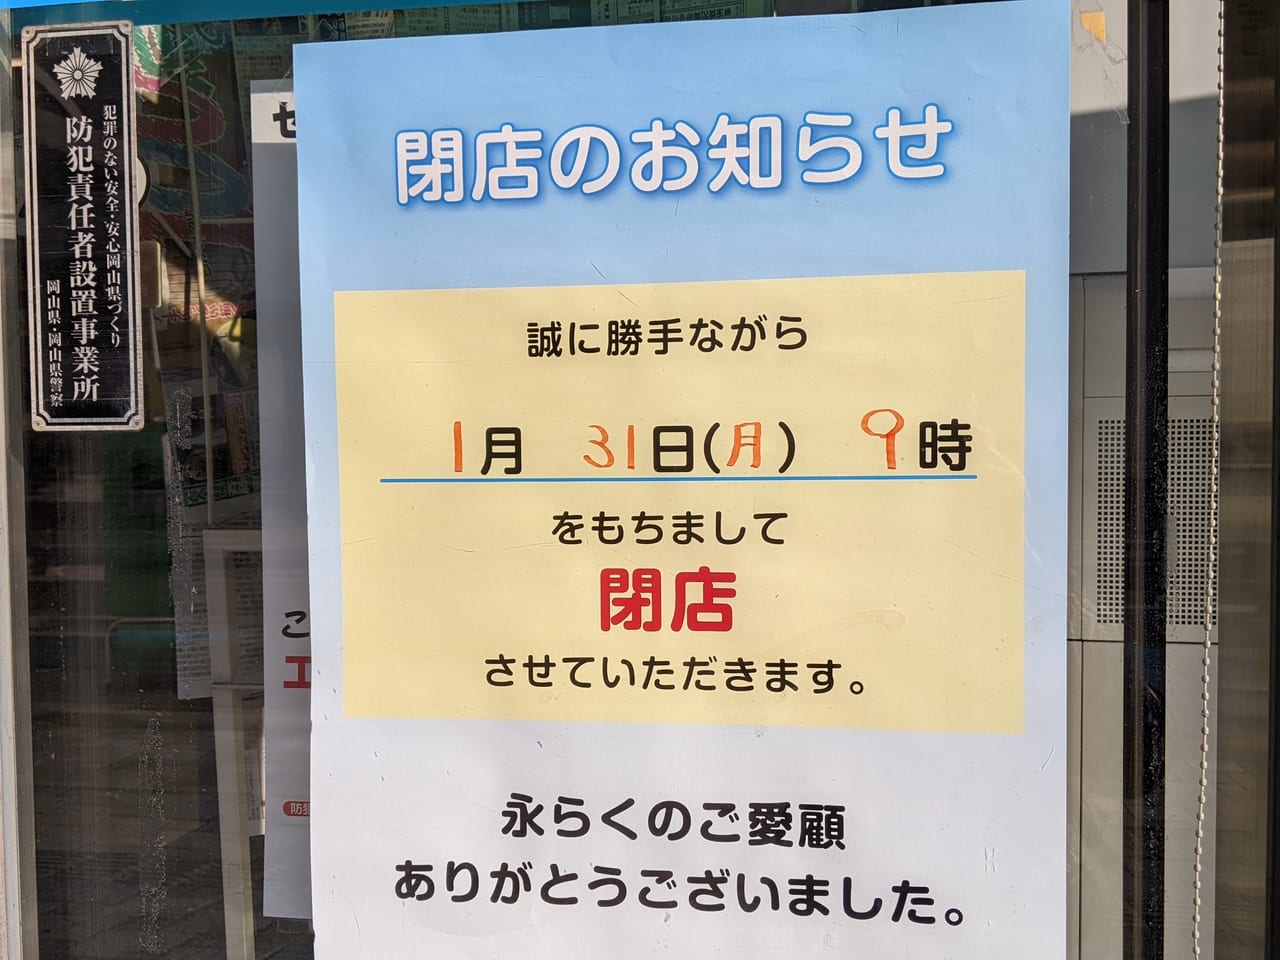 ファミリーマート岡山駅前店の閉店のお知らせ